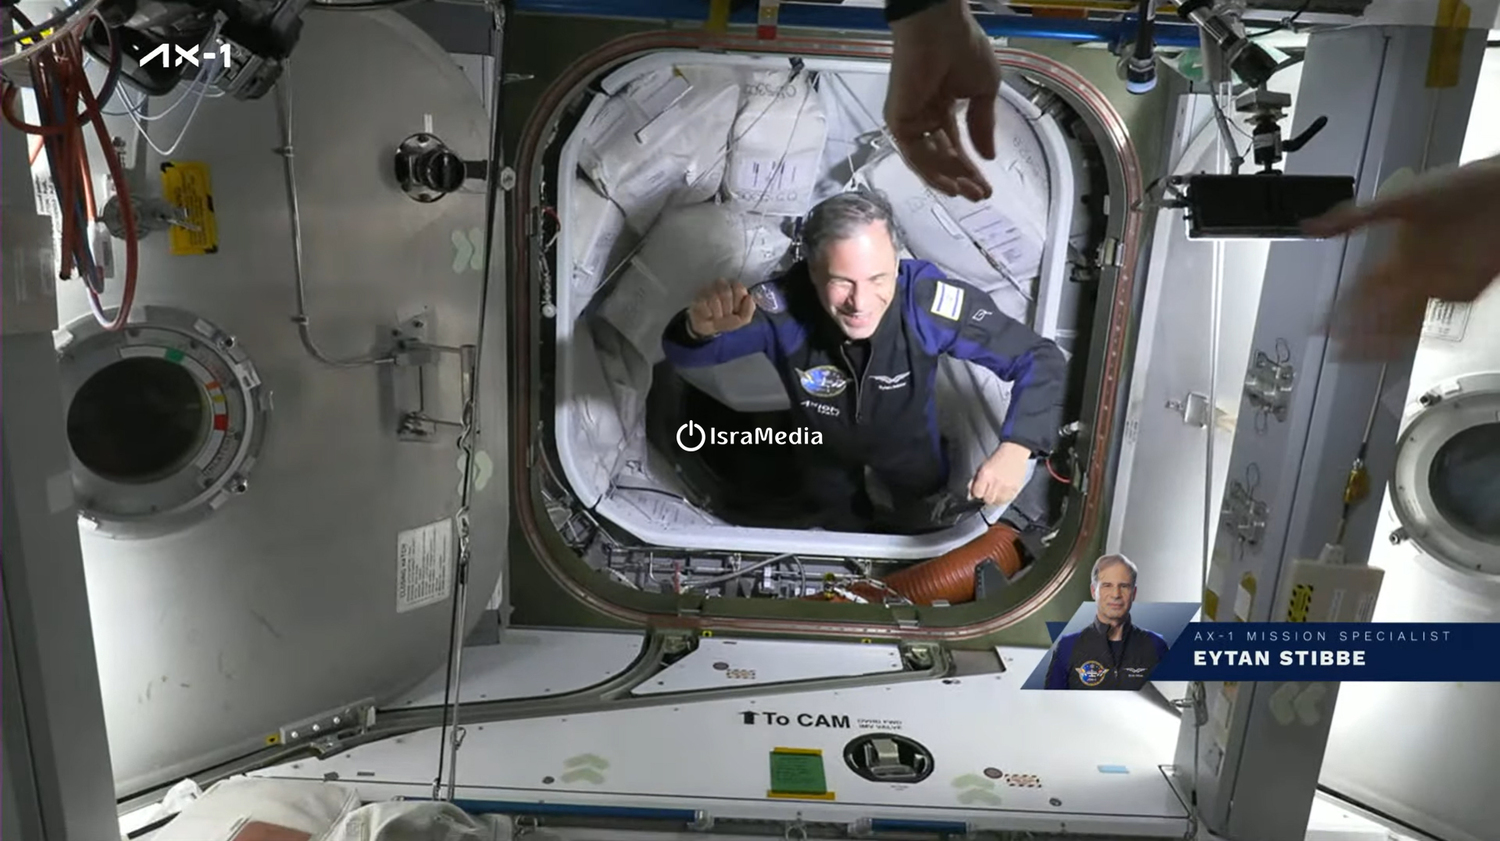 האסטרונאוט איתן סטיבה וצוות Ax-1 הגיעו לתחנת החלל הבין-לאומית